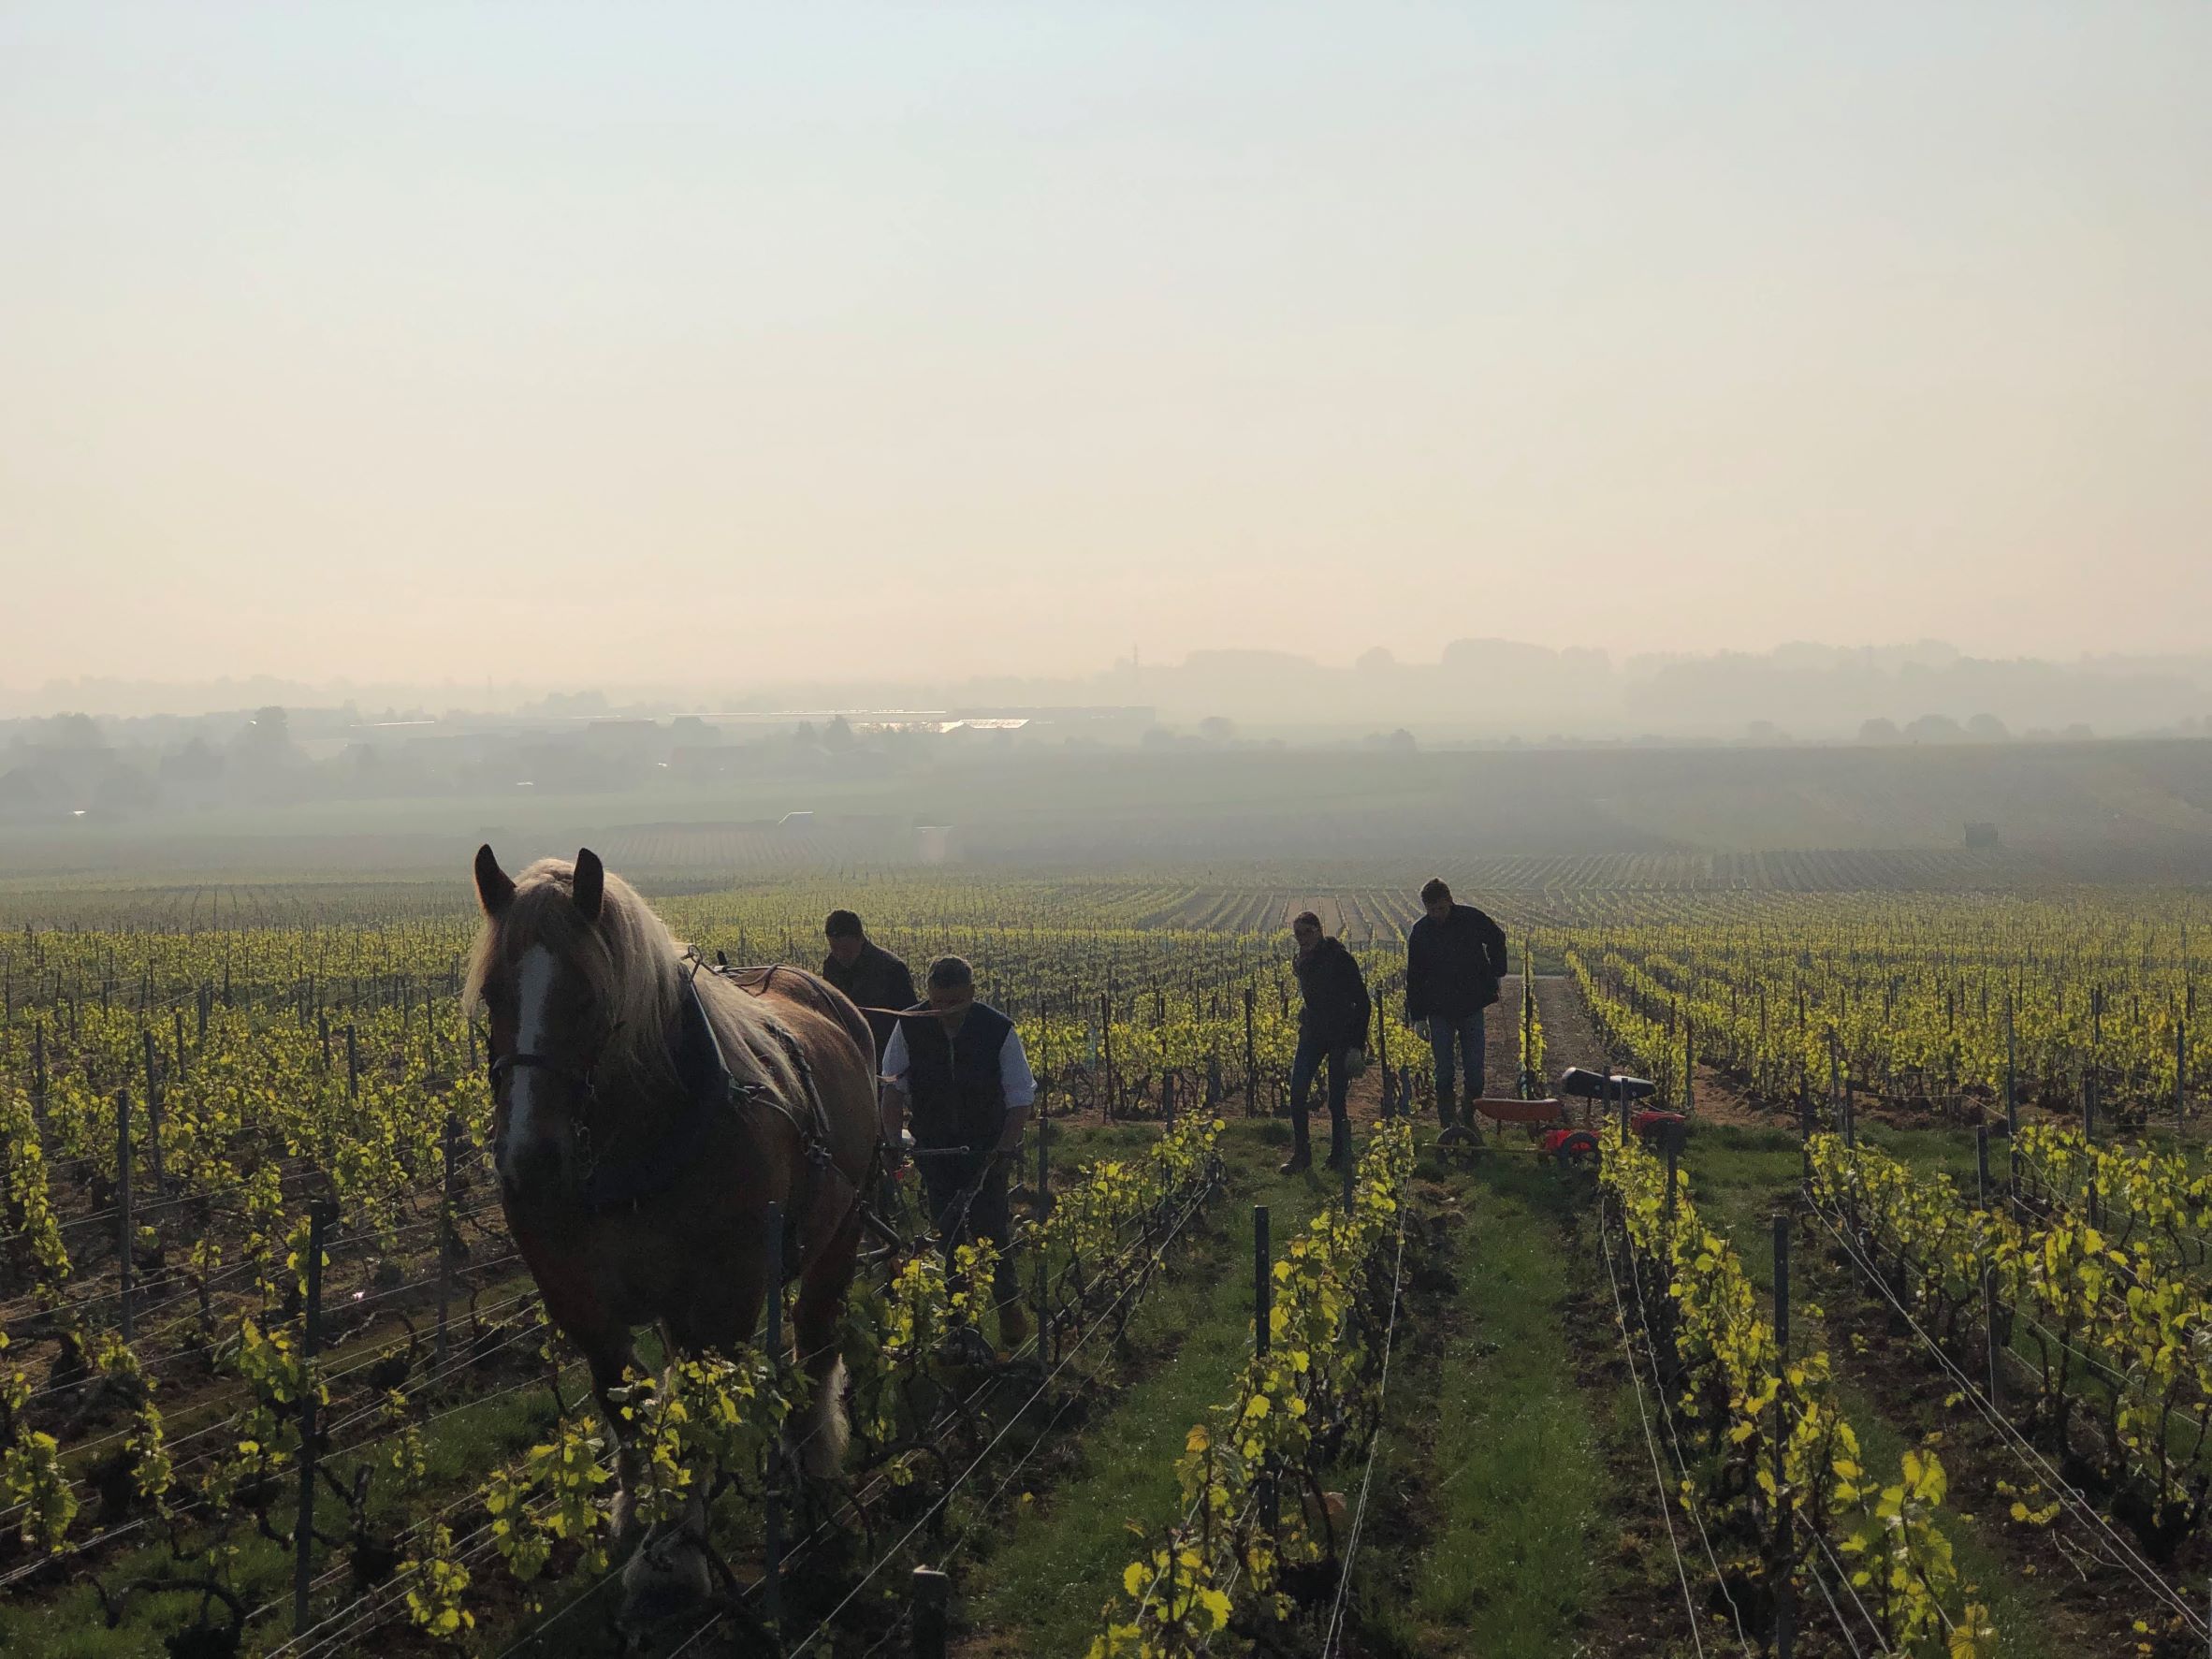 法國香檳區的葡萄栽種品種有所限定，以黑皮諾、夏多內與莫尼耶皮諾為主。